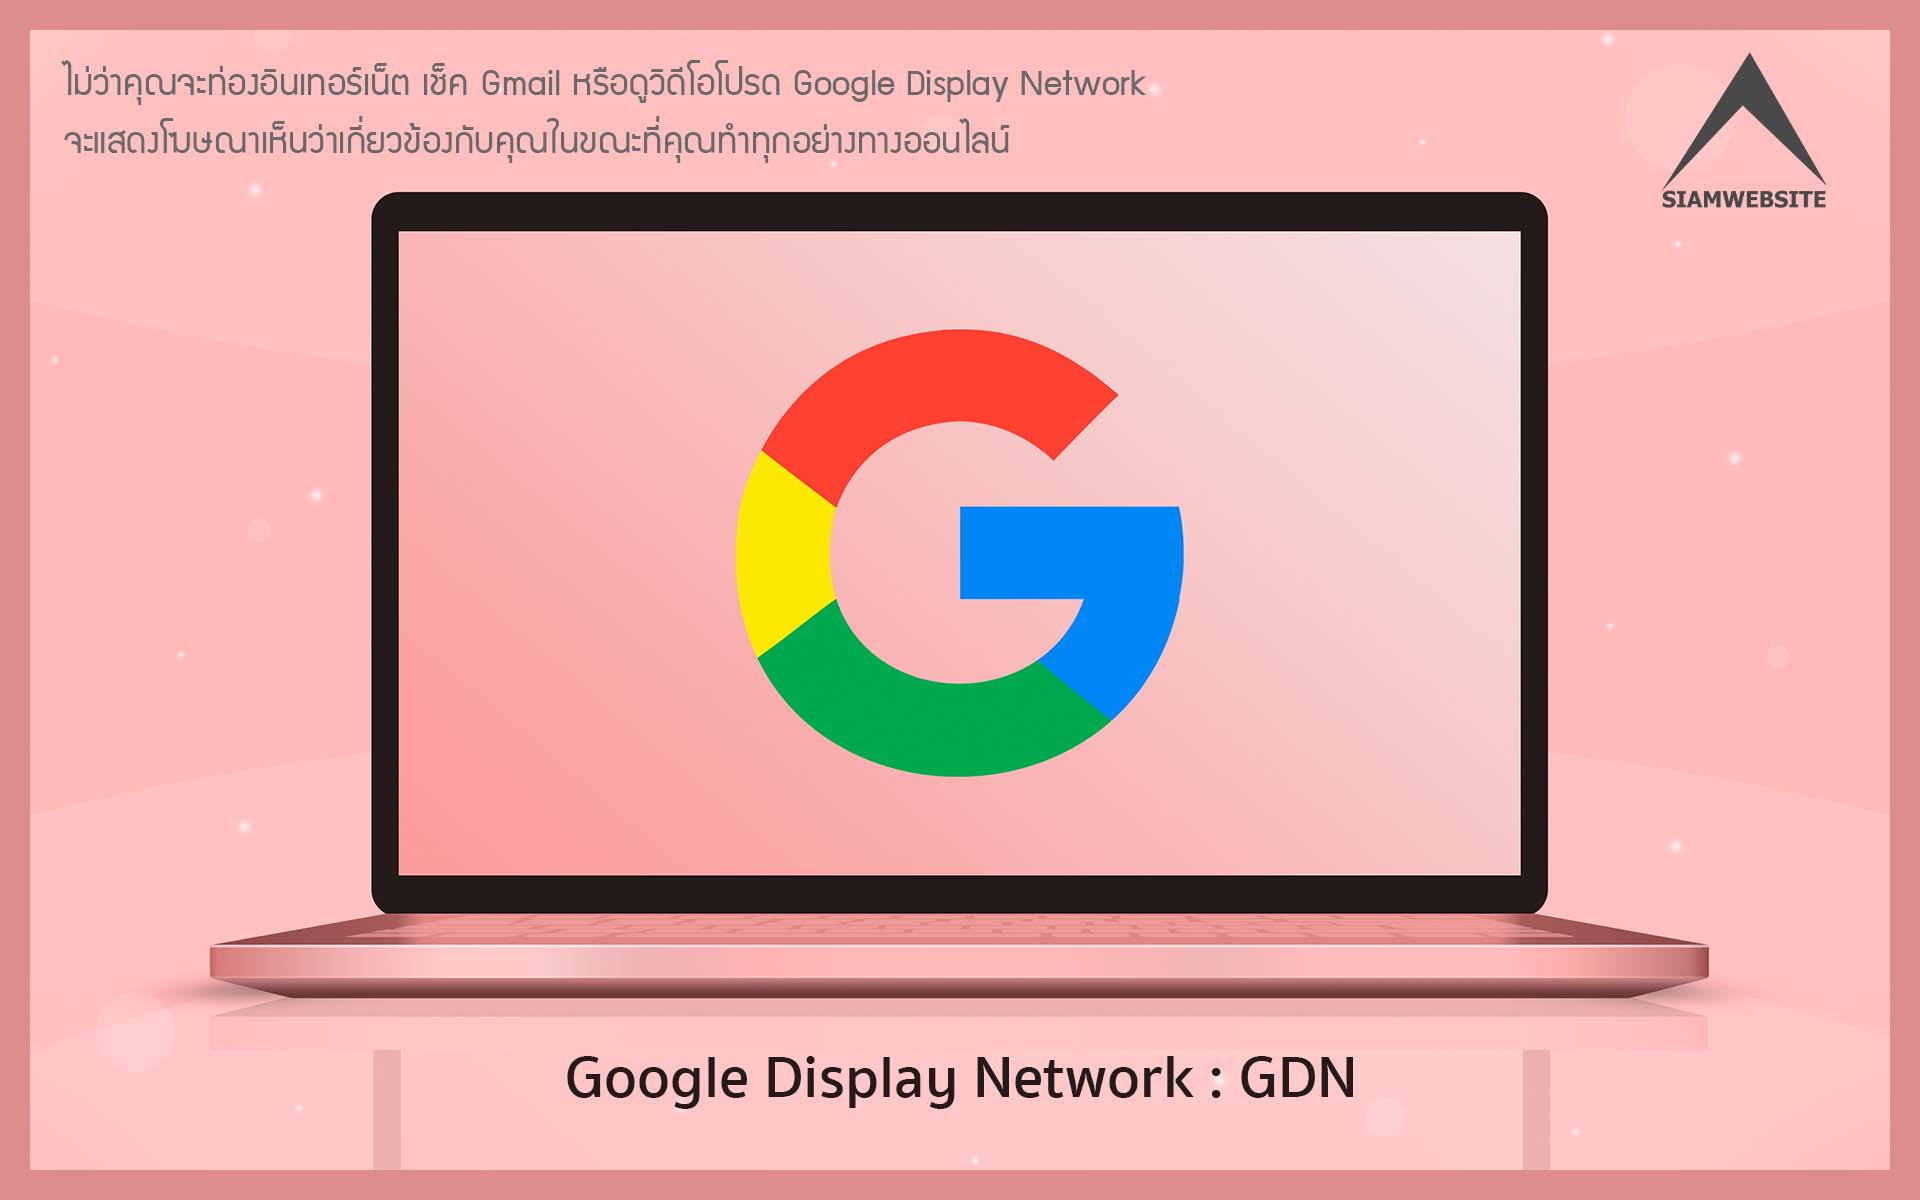 รับทําเว็บไซต์ เว็บขยายสายงาน GDN ย่อมาจาก Google Display Network เครื่องมือโฆษณาของ Google | TTT-WEBSITE 